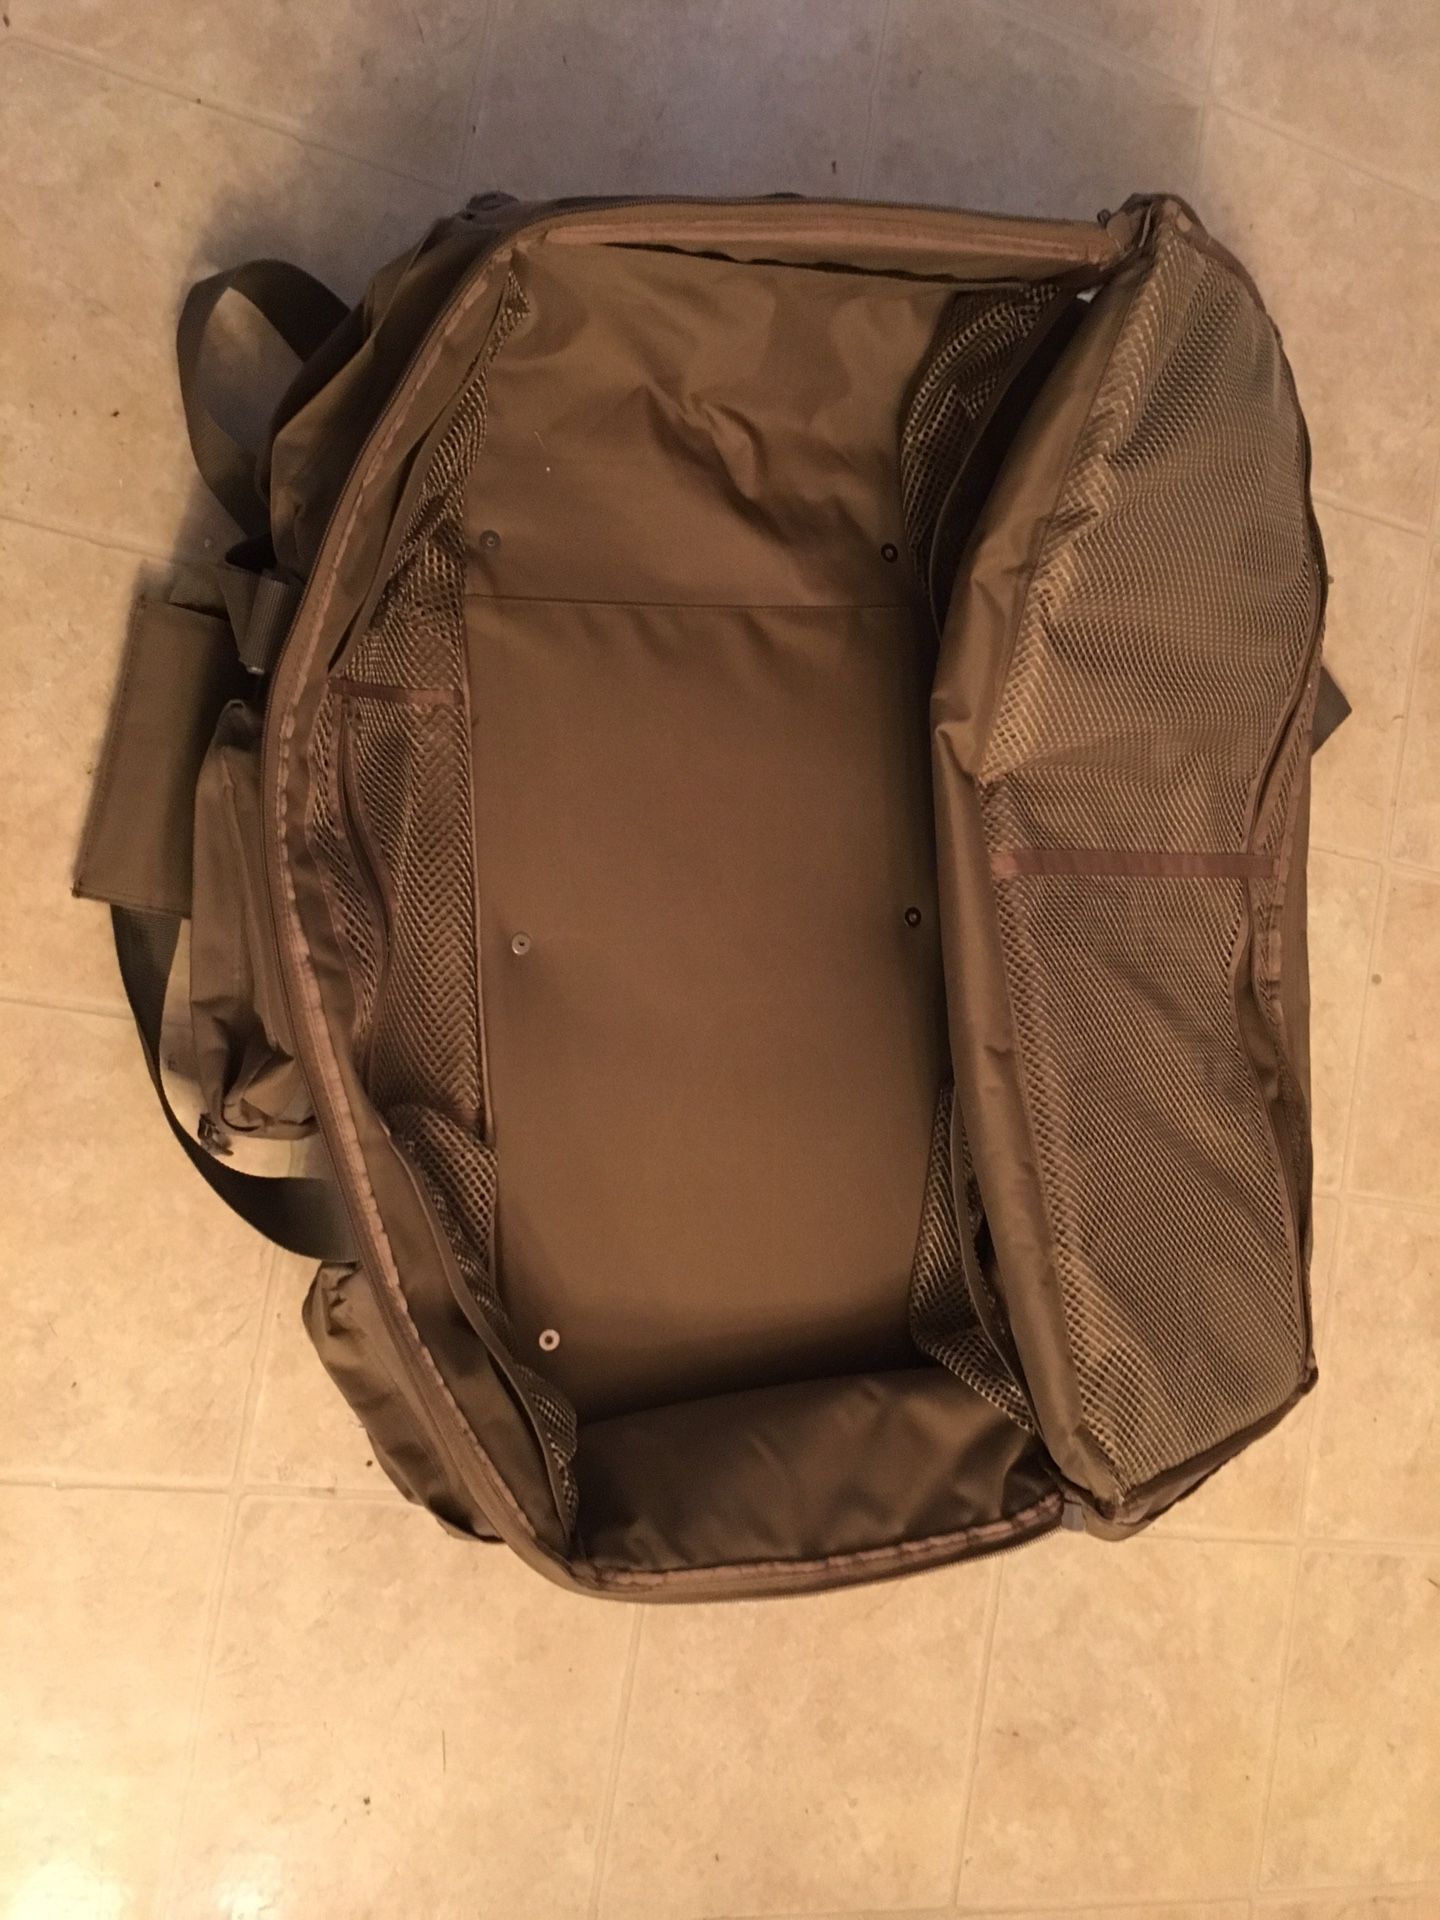 Military S.O.C duffle bag.